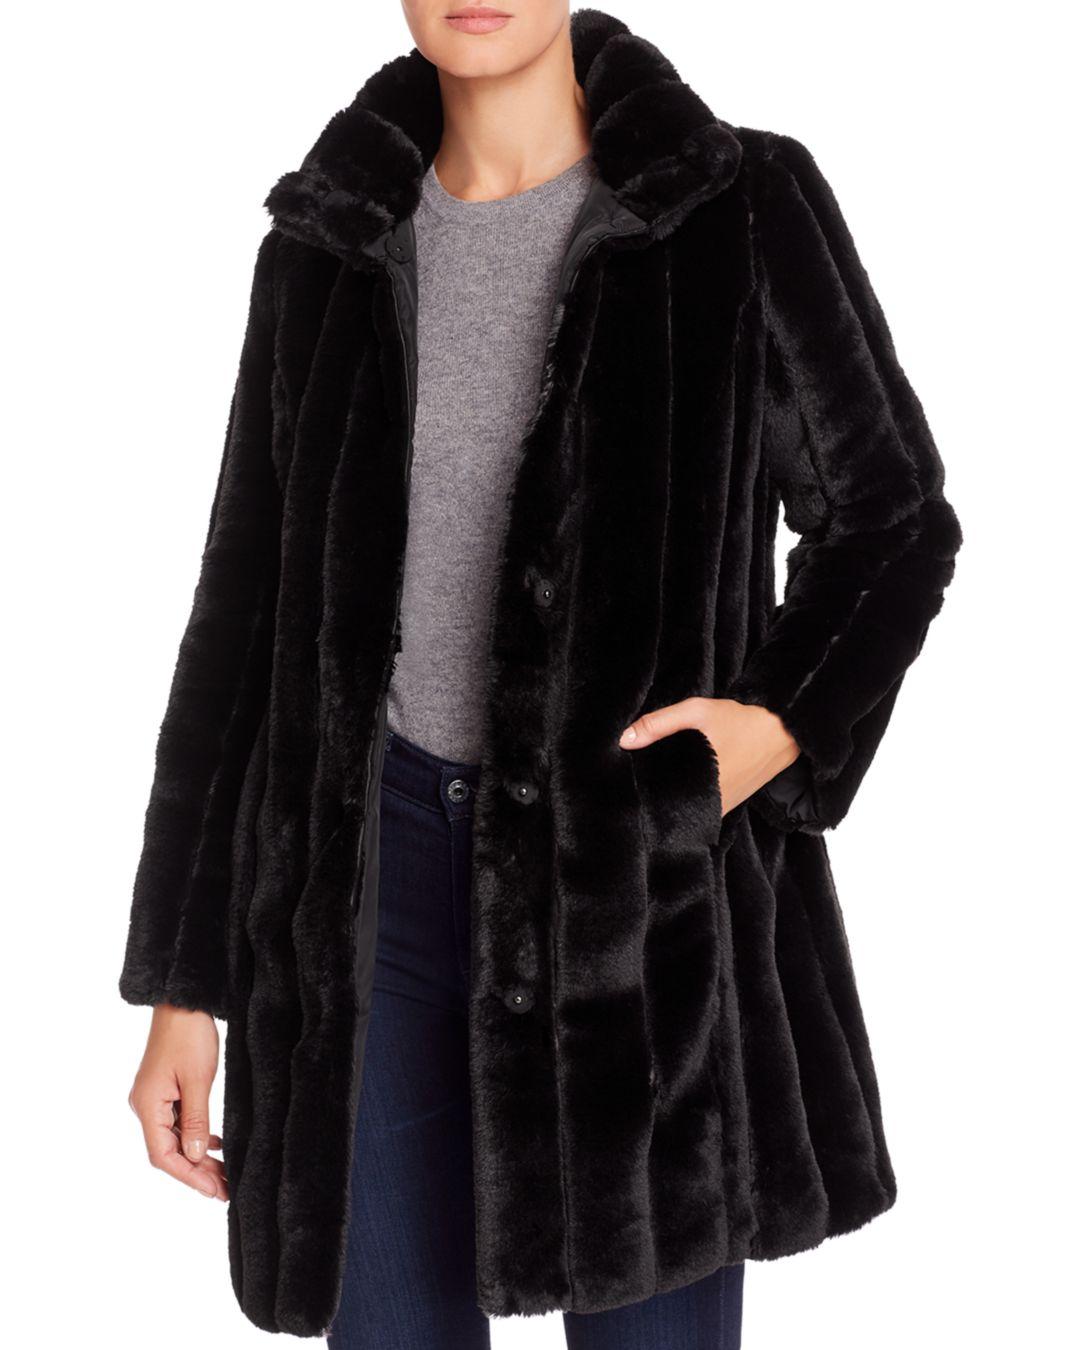 Via Spiga Reversible Vertical - Grooved Faux Fur Coat in Black - Lyst